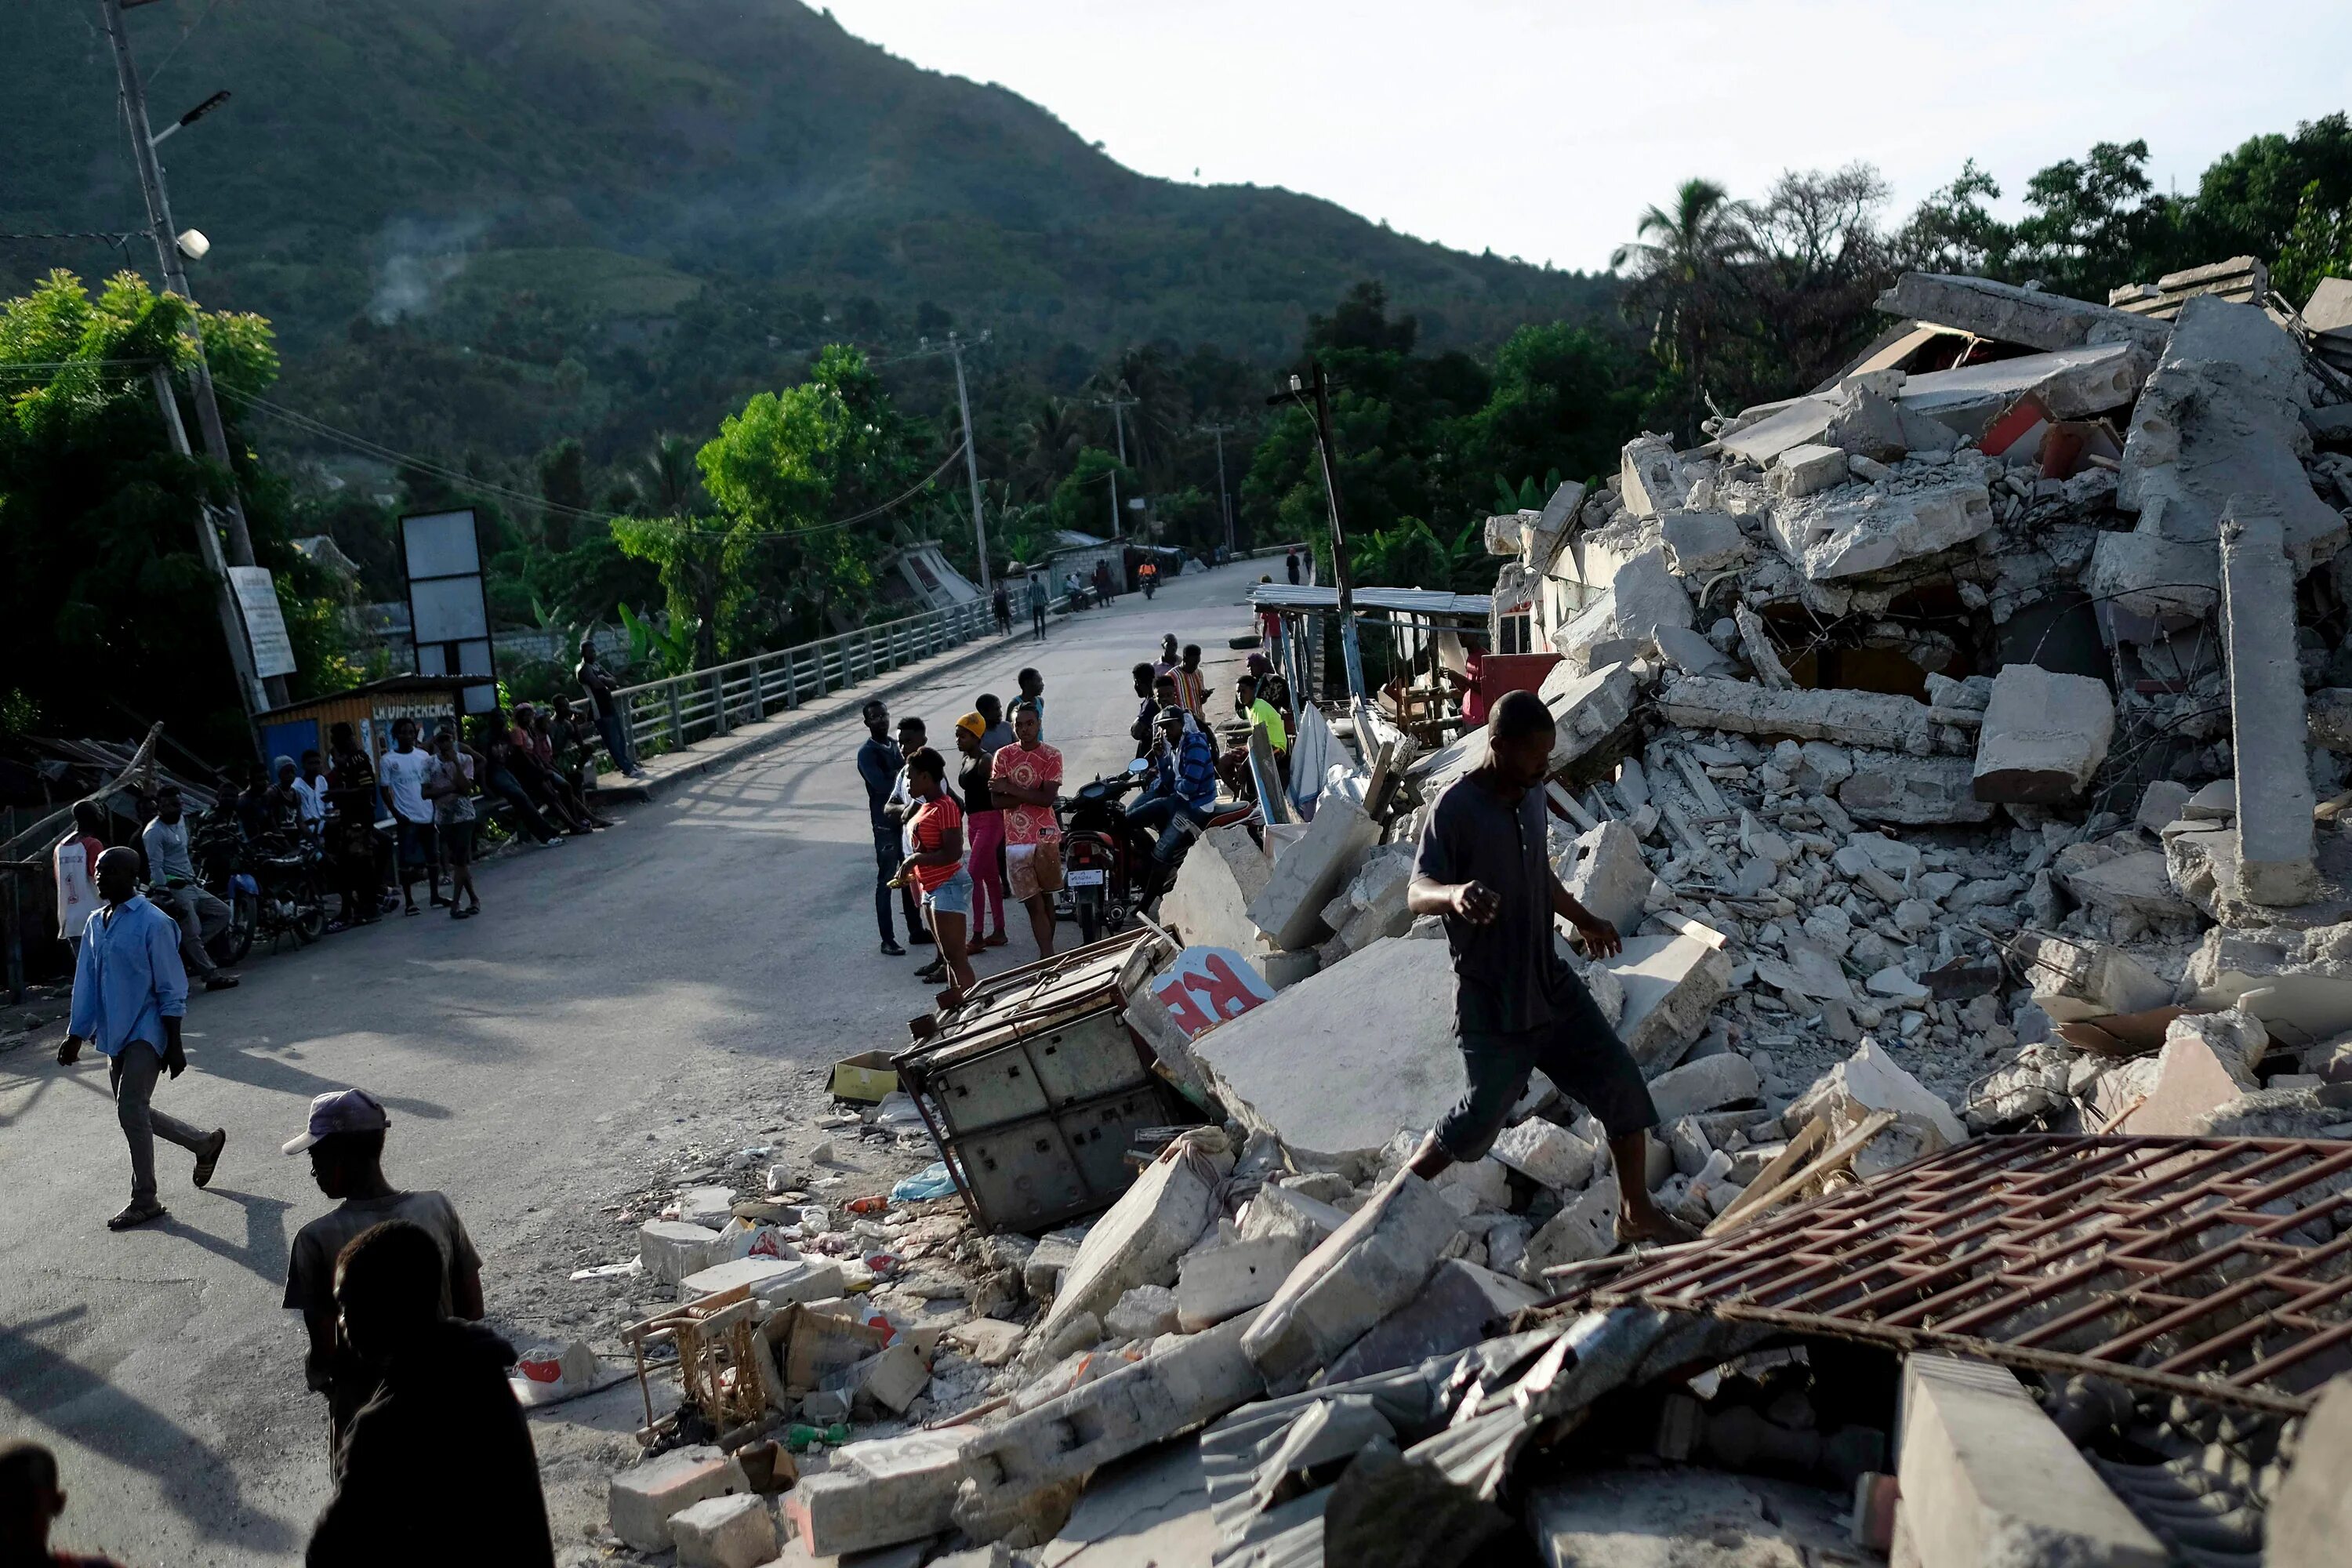 Землетрясение на Гаити 2021. Землетрясение на Гаити в 2010 порт-о-Пренс. Землетрясение на Гаити 2010 президентский дворец. Землетрясение возникает в результате